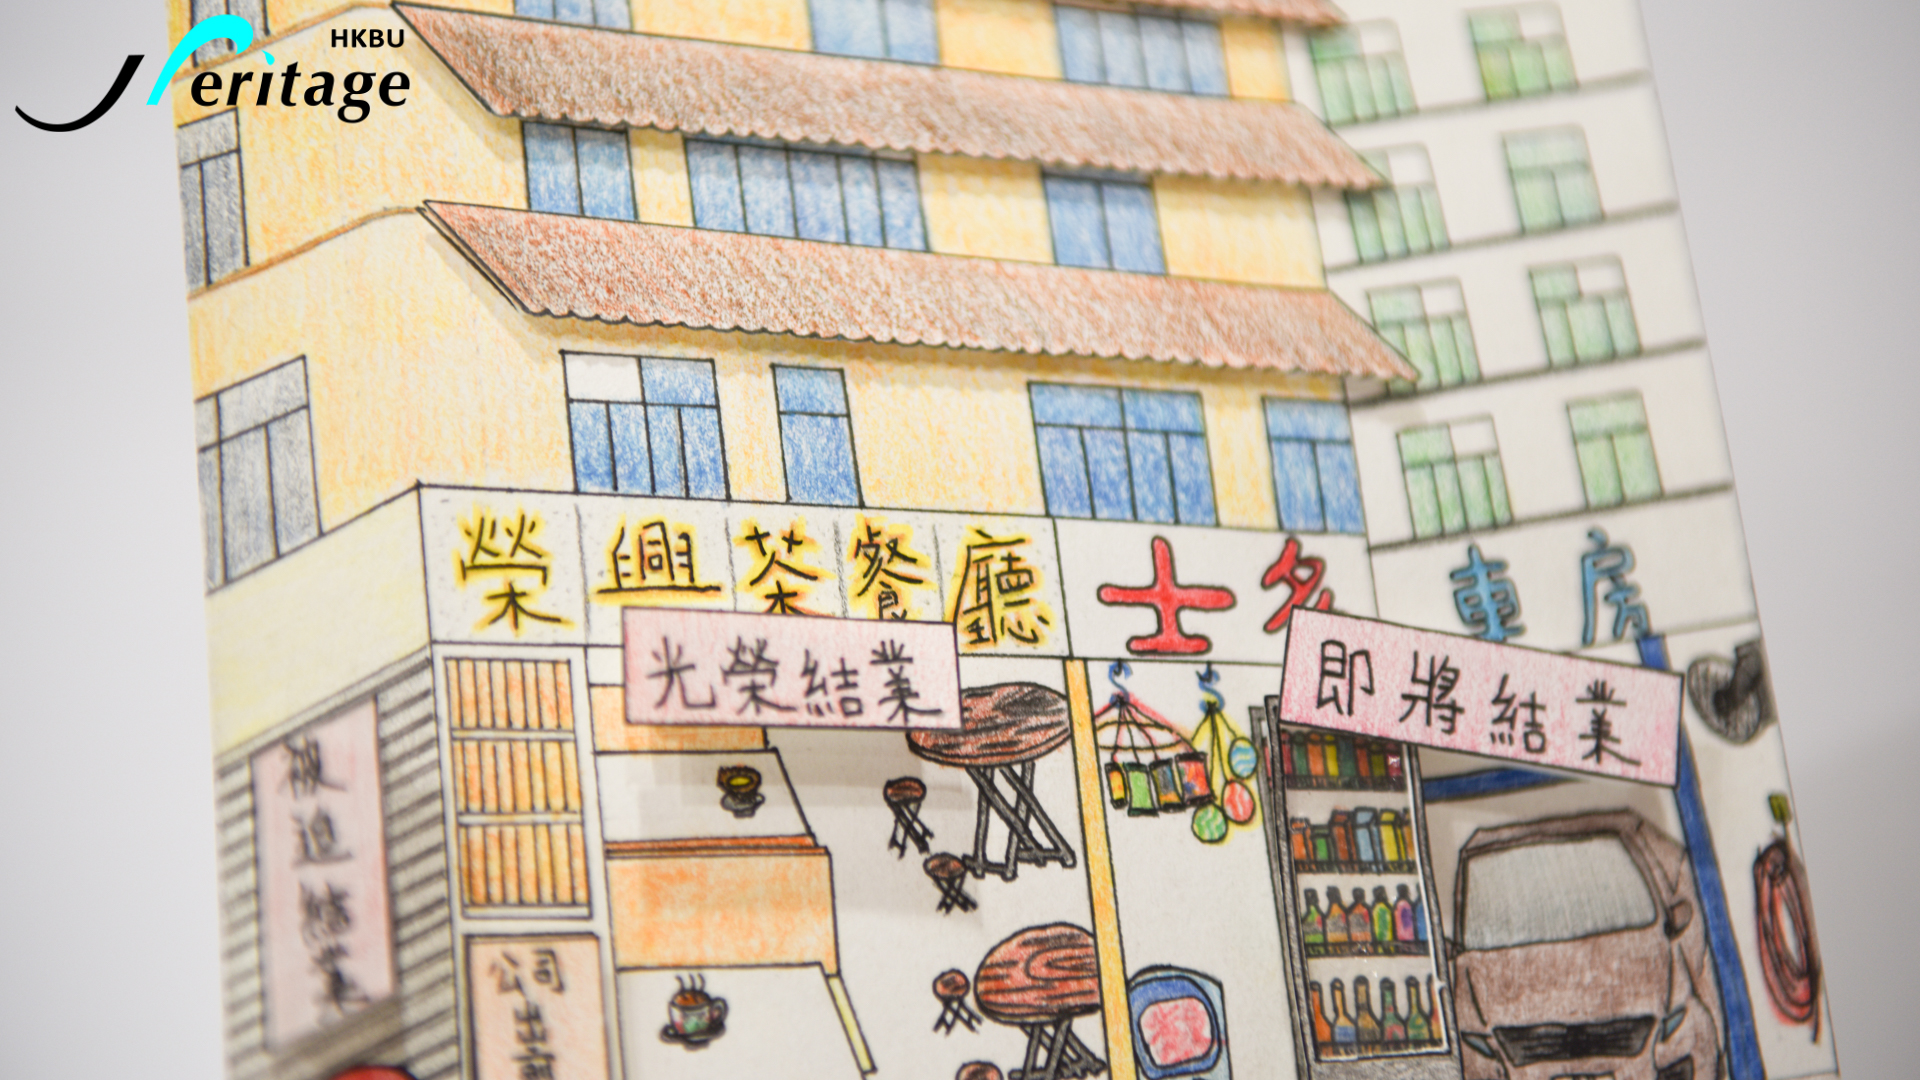 HKBU Heritage : To Kwa Wan  Express Student Work